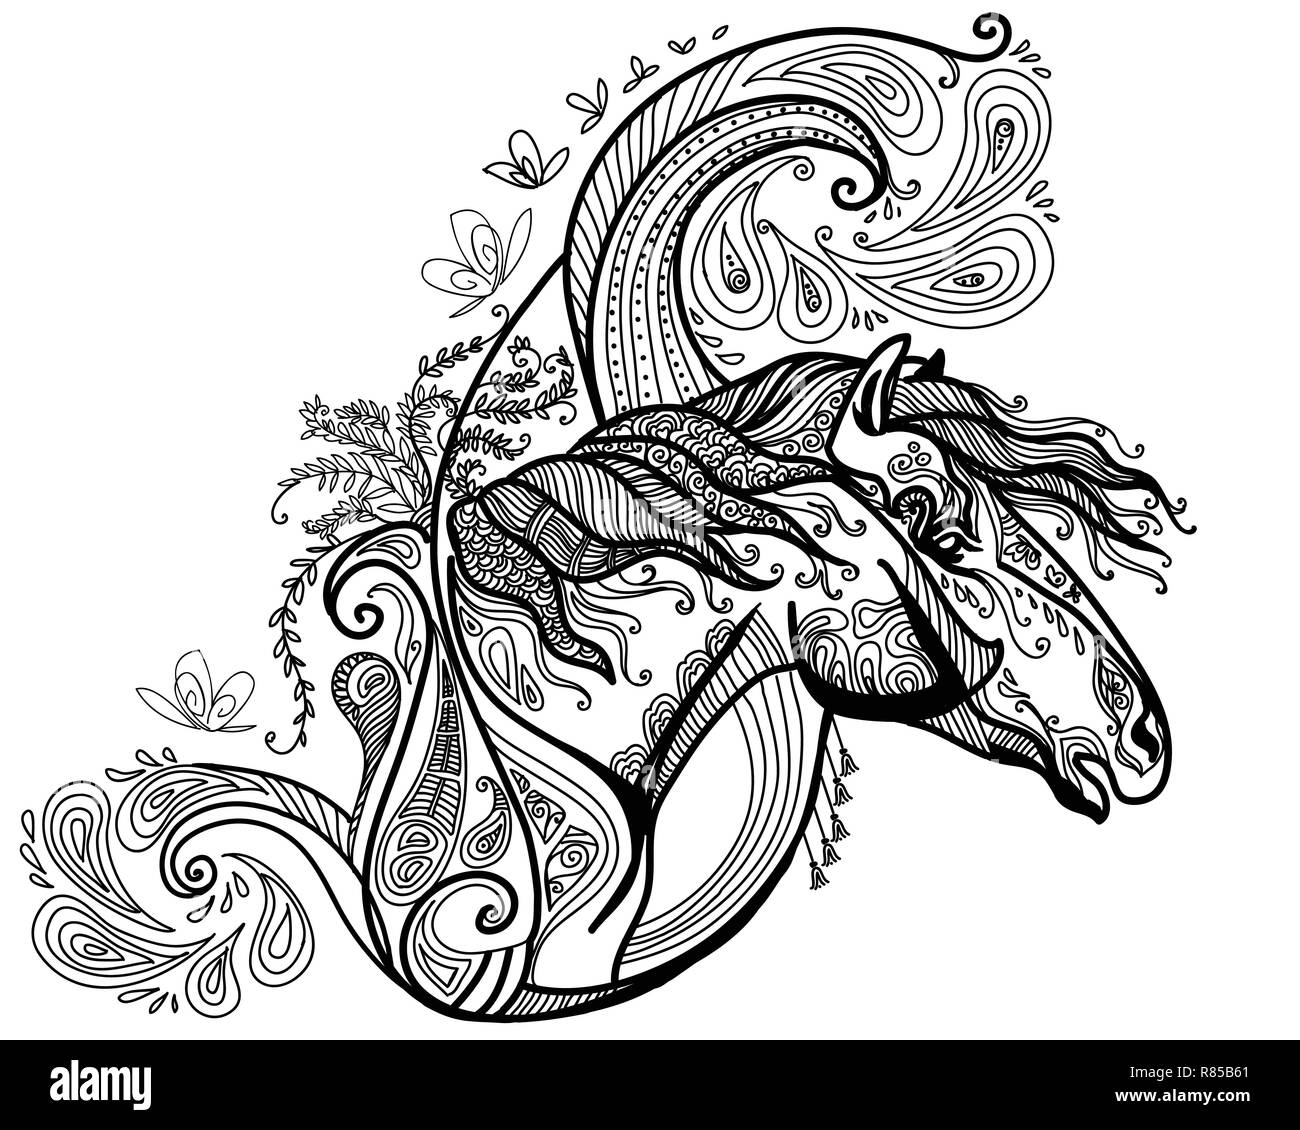 Vettore di disegno a mano illustrazione zentangle cavallo in colore nero isolato su sfondo bianco. Doodle cavallo illustrazione con elementi d'impianto. Colorazione Illustrazione Vettoriale